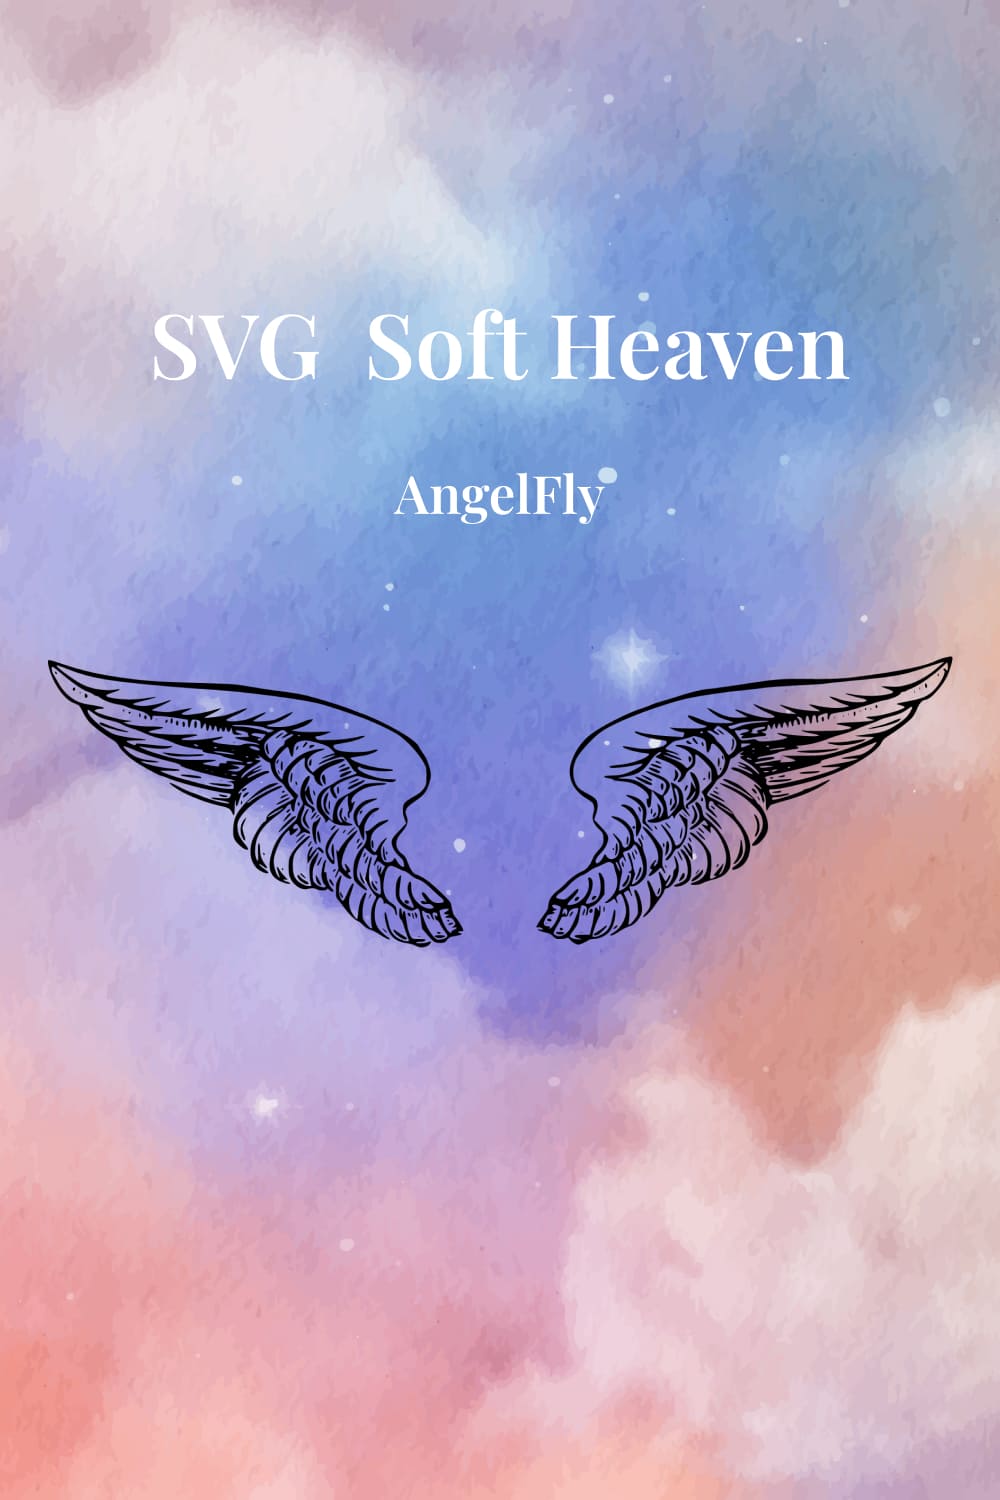 Image of two volumetric angel wings.